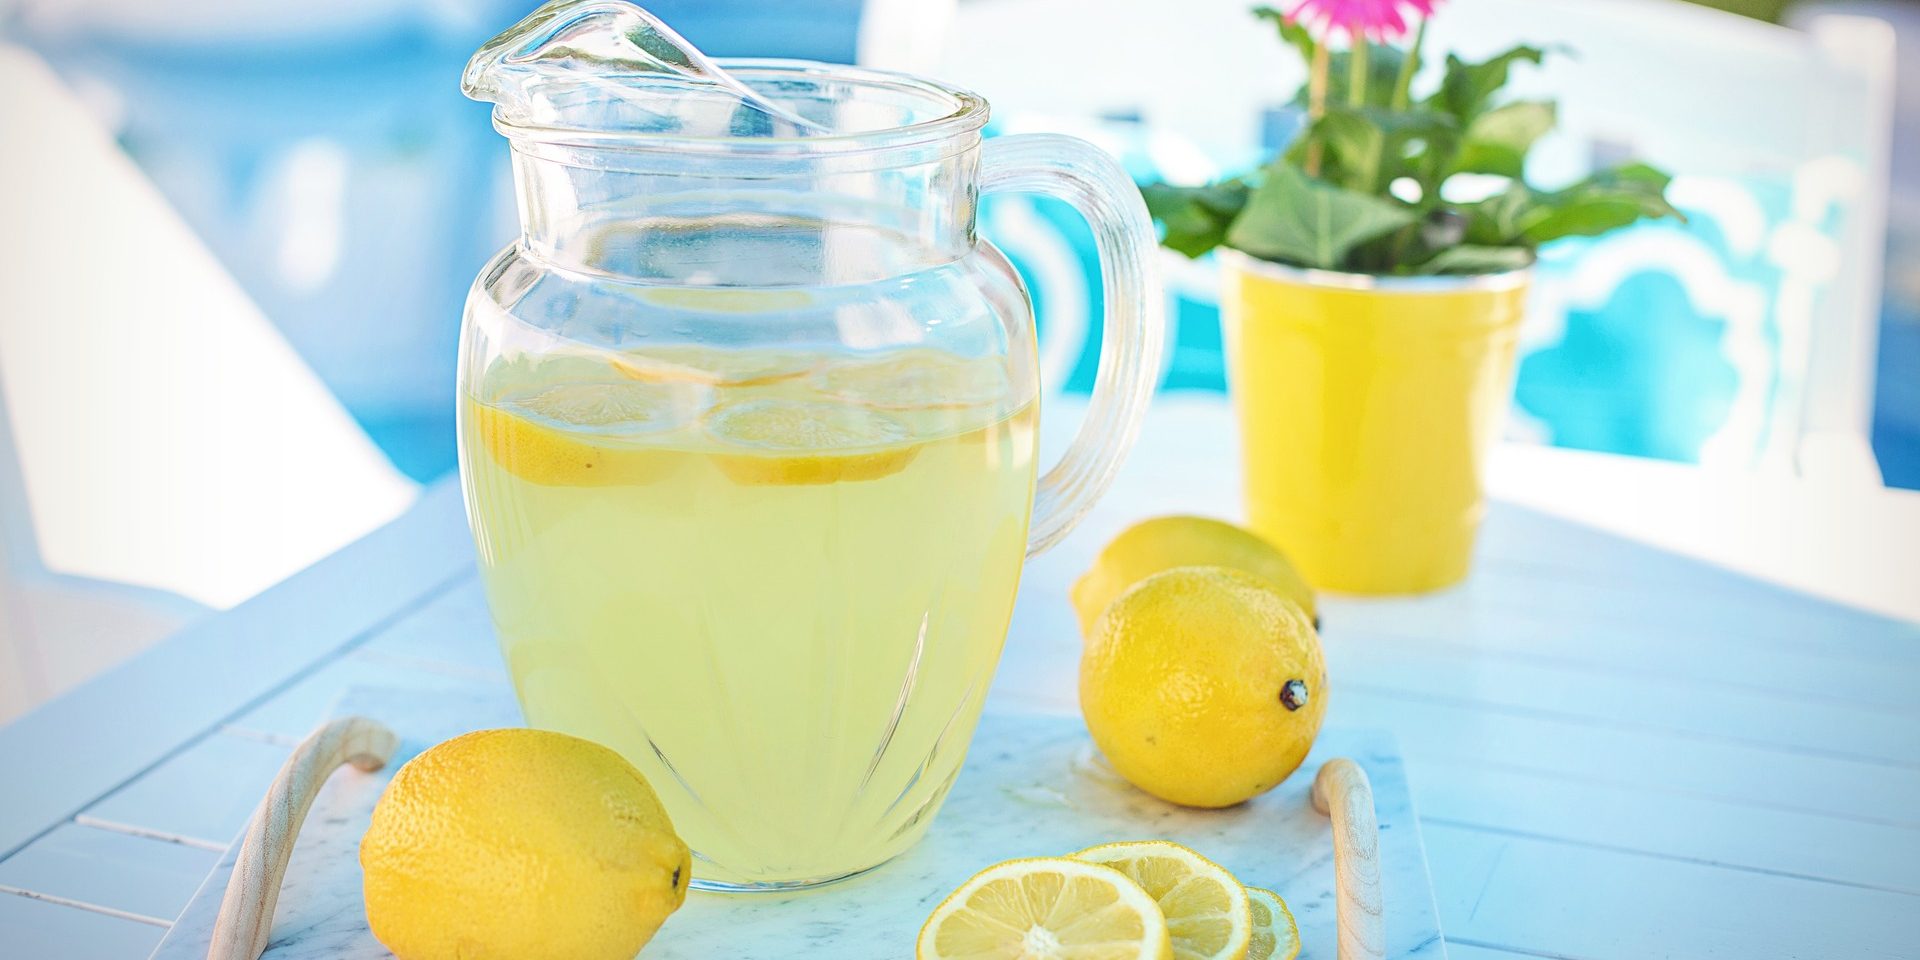 15 рецептов домашнего лимонада, который вкуснее магазинного лимонного, сахар, свежевыжатого, кубиков, через, стаканам, сироп, напиток, Разлейте, водой, доведите, перемешайте, сокагорсть, кастрюлю, варите, блендером, Добавьте, газированной, лимонный, лимонад